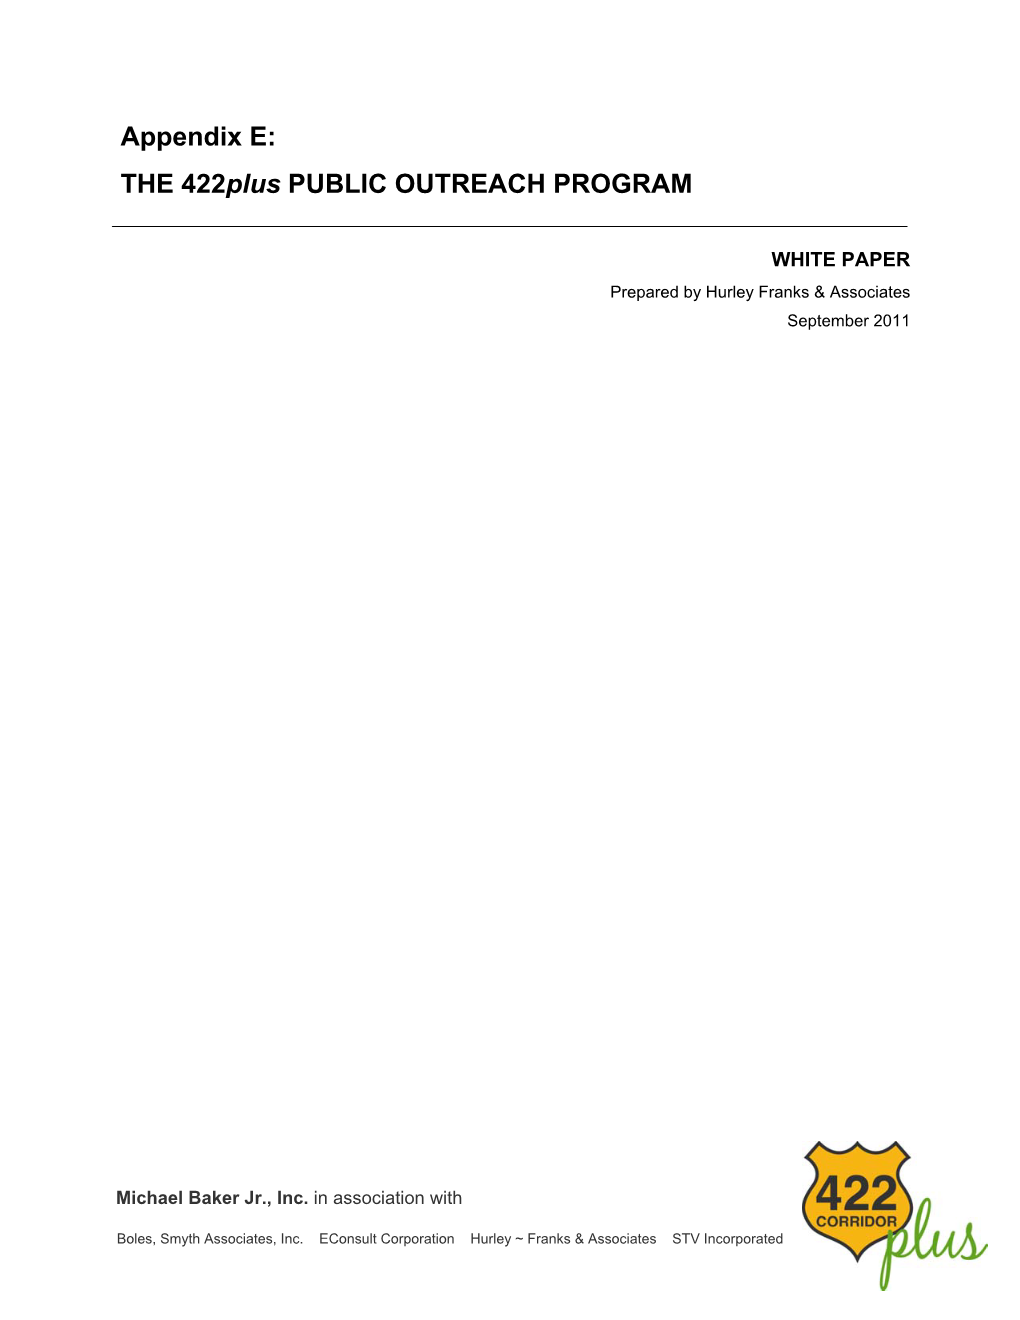 Appendix E: the 422Plus PUBLIC OUTREACH PROGRAM